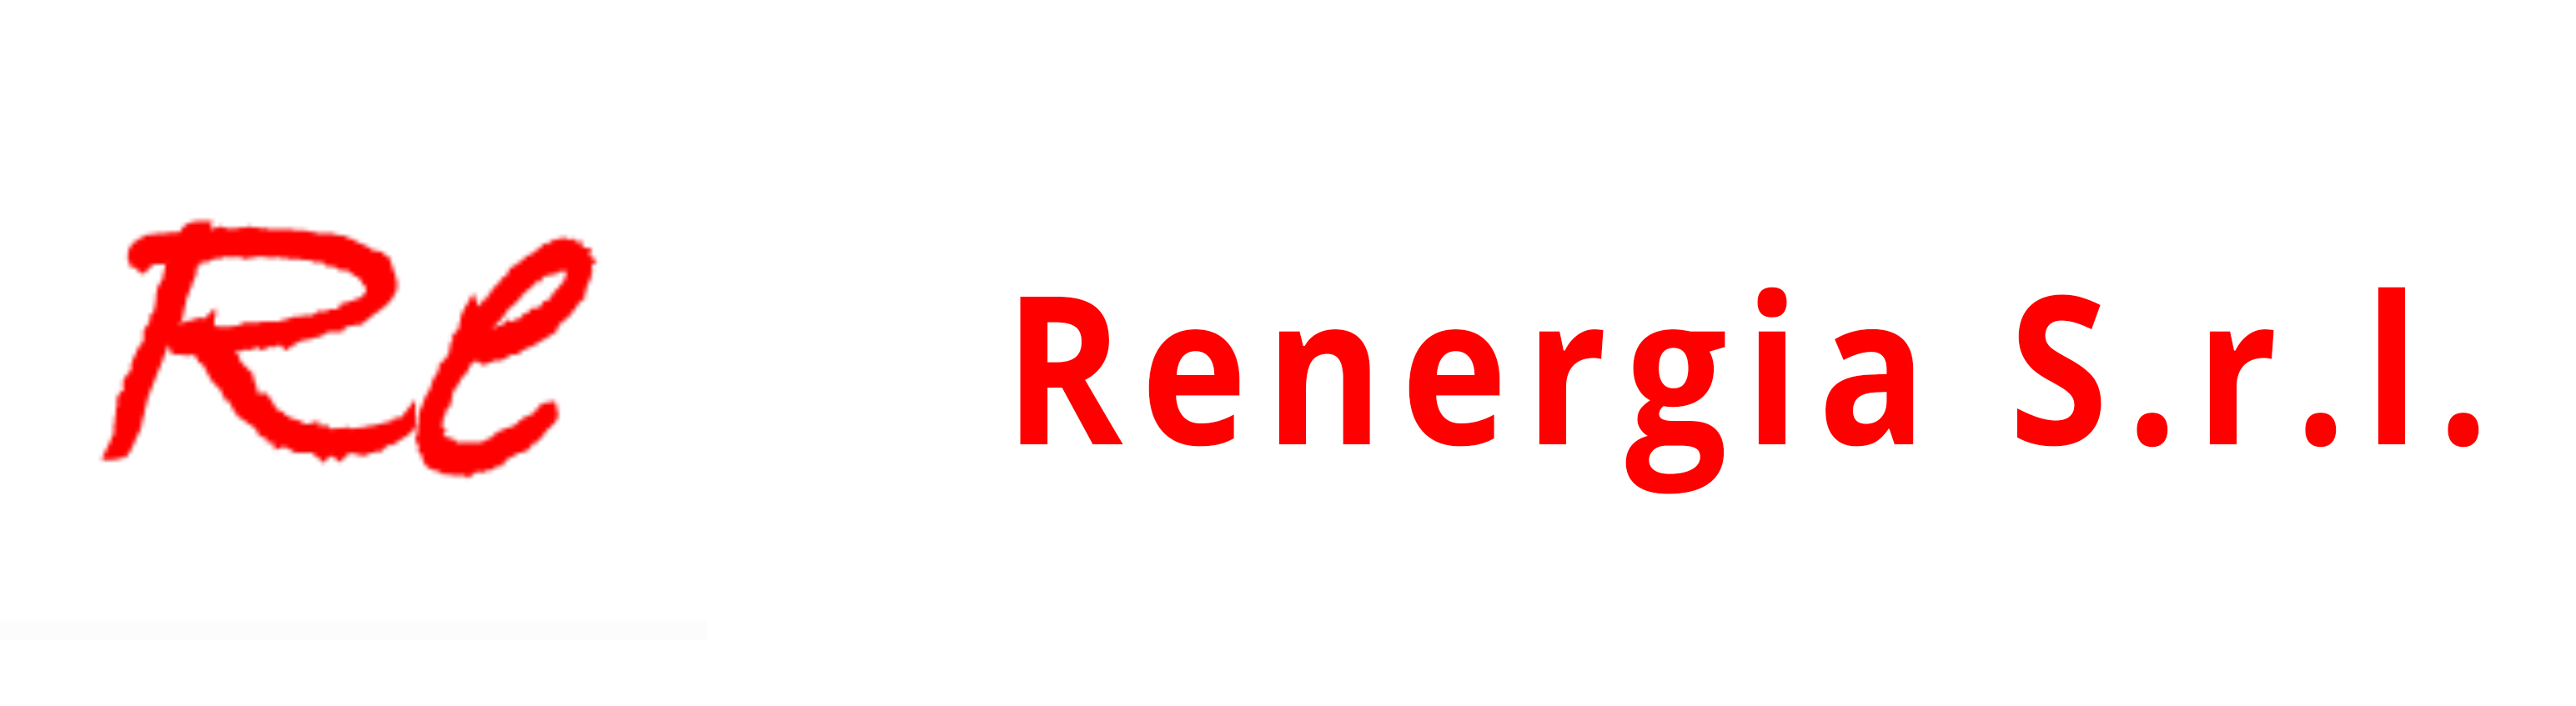 Renergia S.r.l.